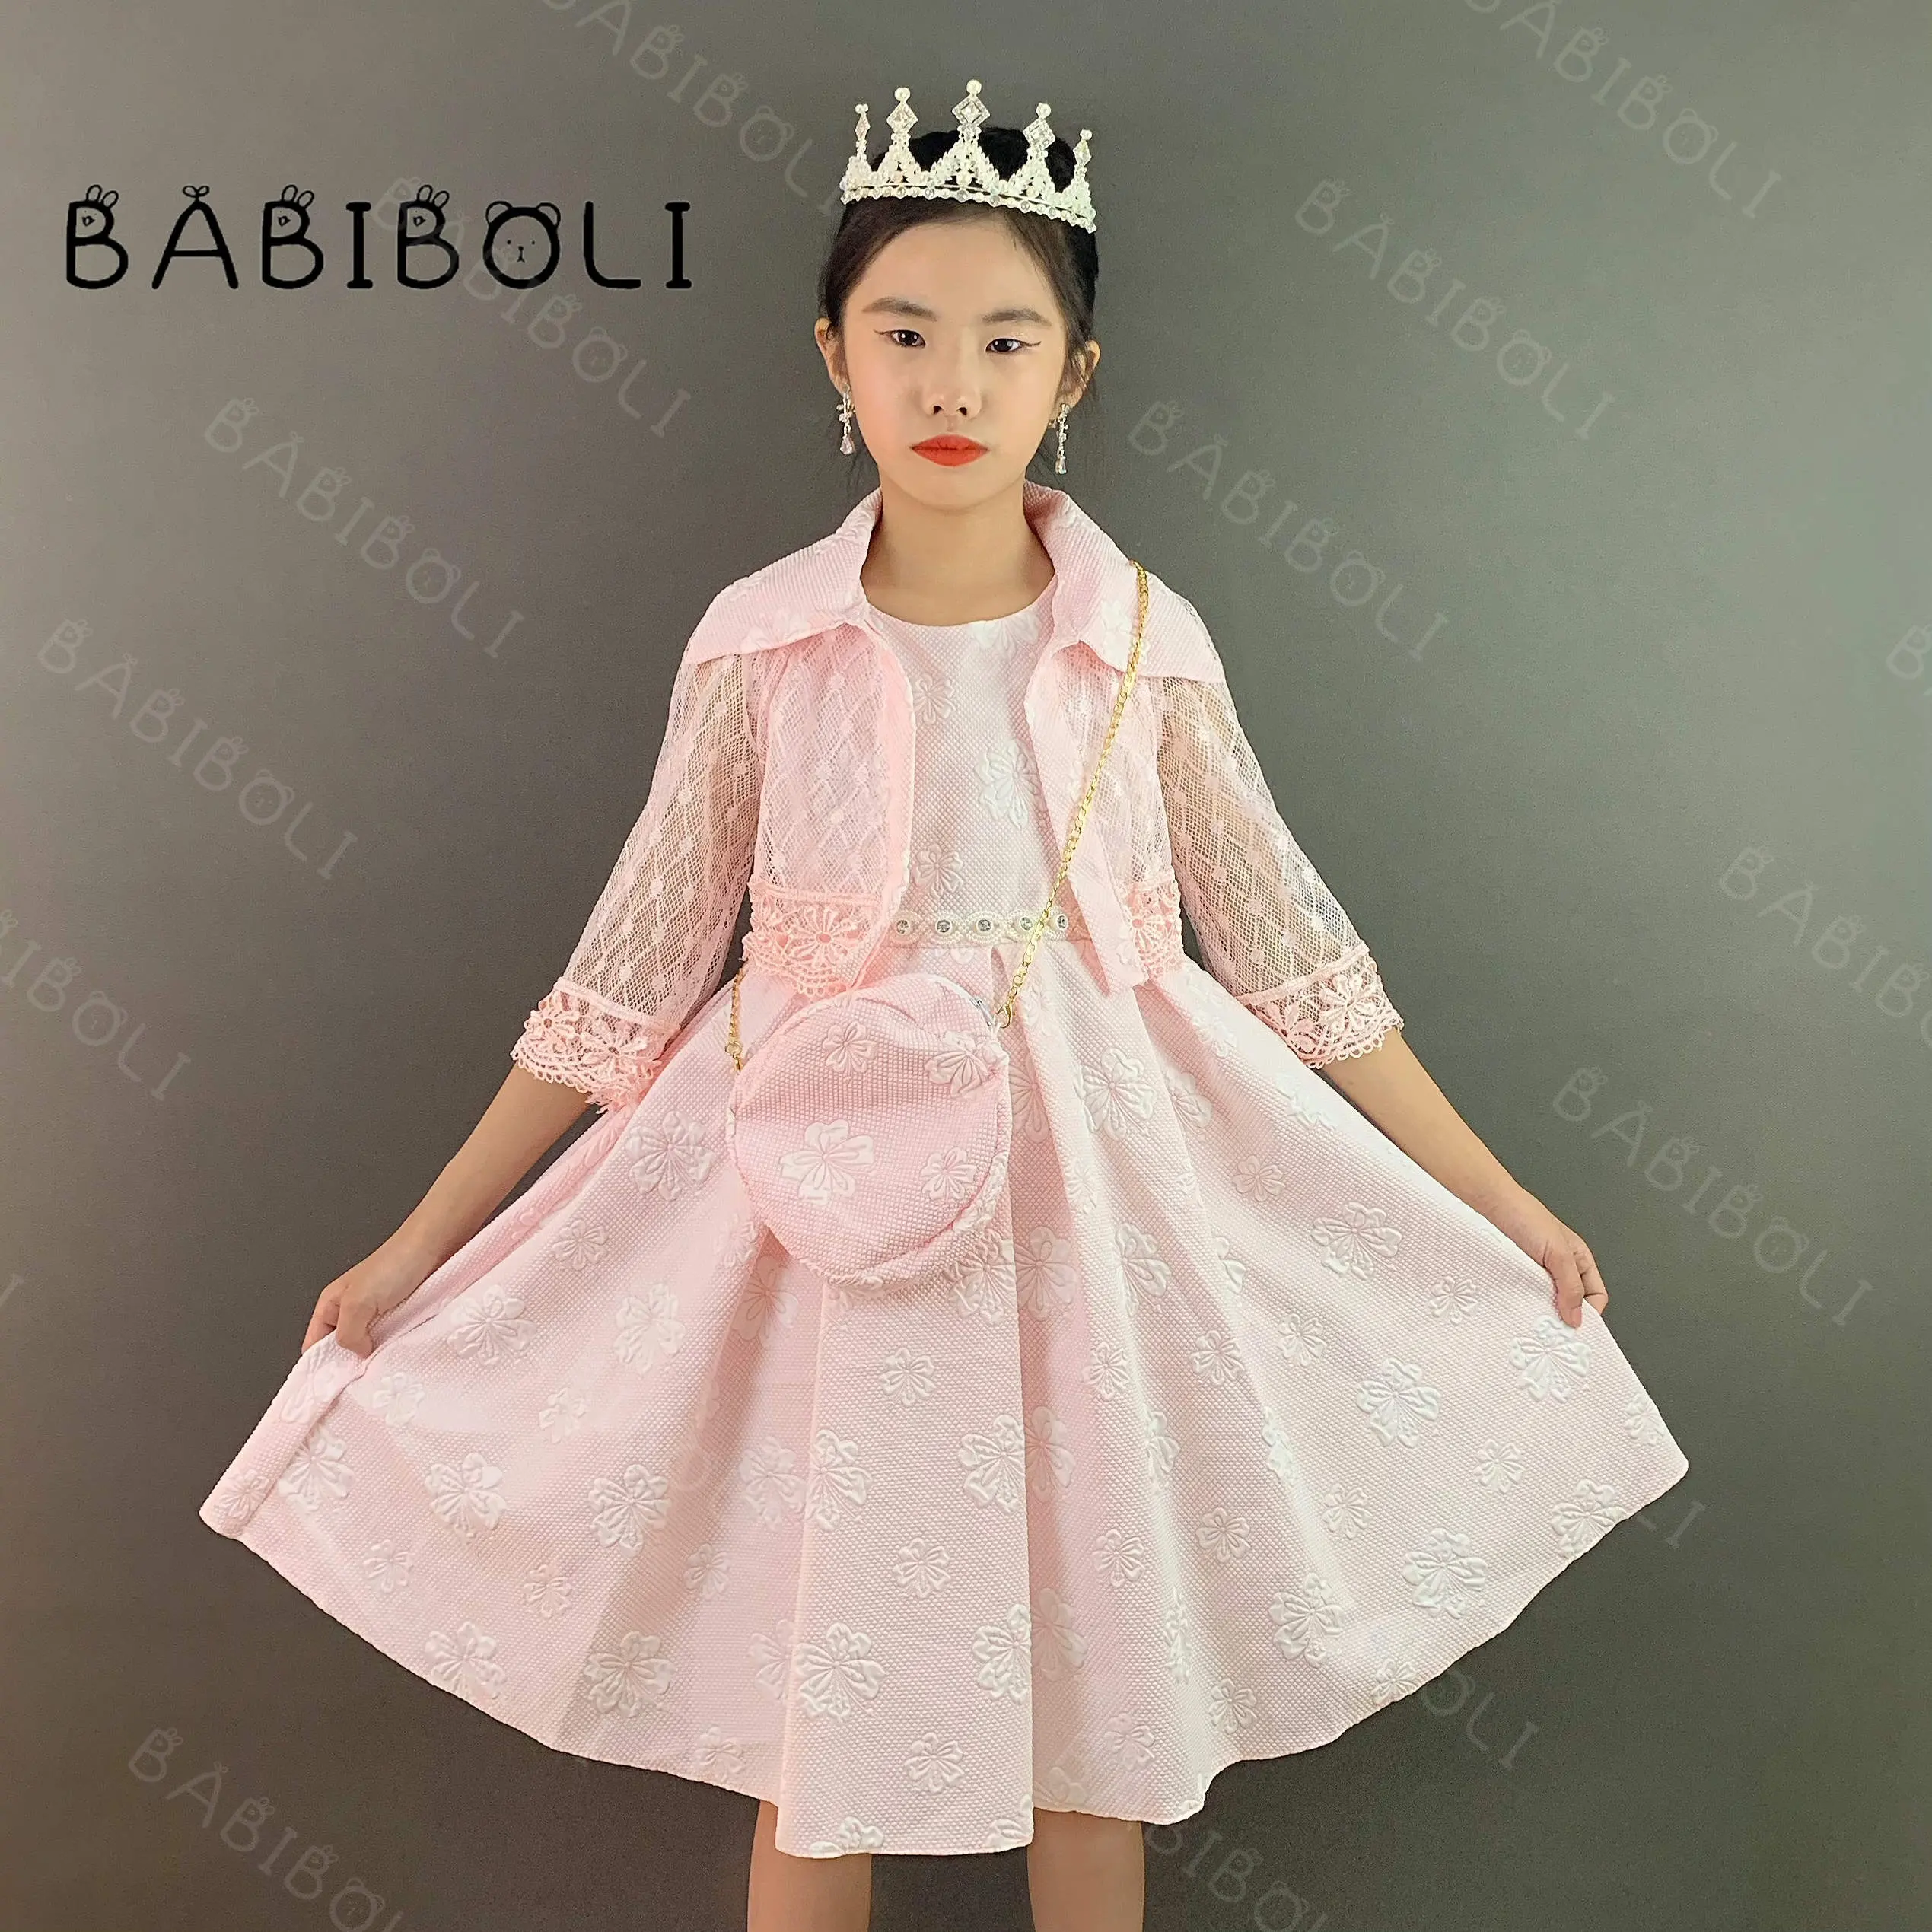 Babiboli elegante vestido de novia de niña de estilo rosa para niños fiesta de cumpleaños encaje con bolsa y chaqueta de encaje vestidos para niñas de manga larga